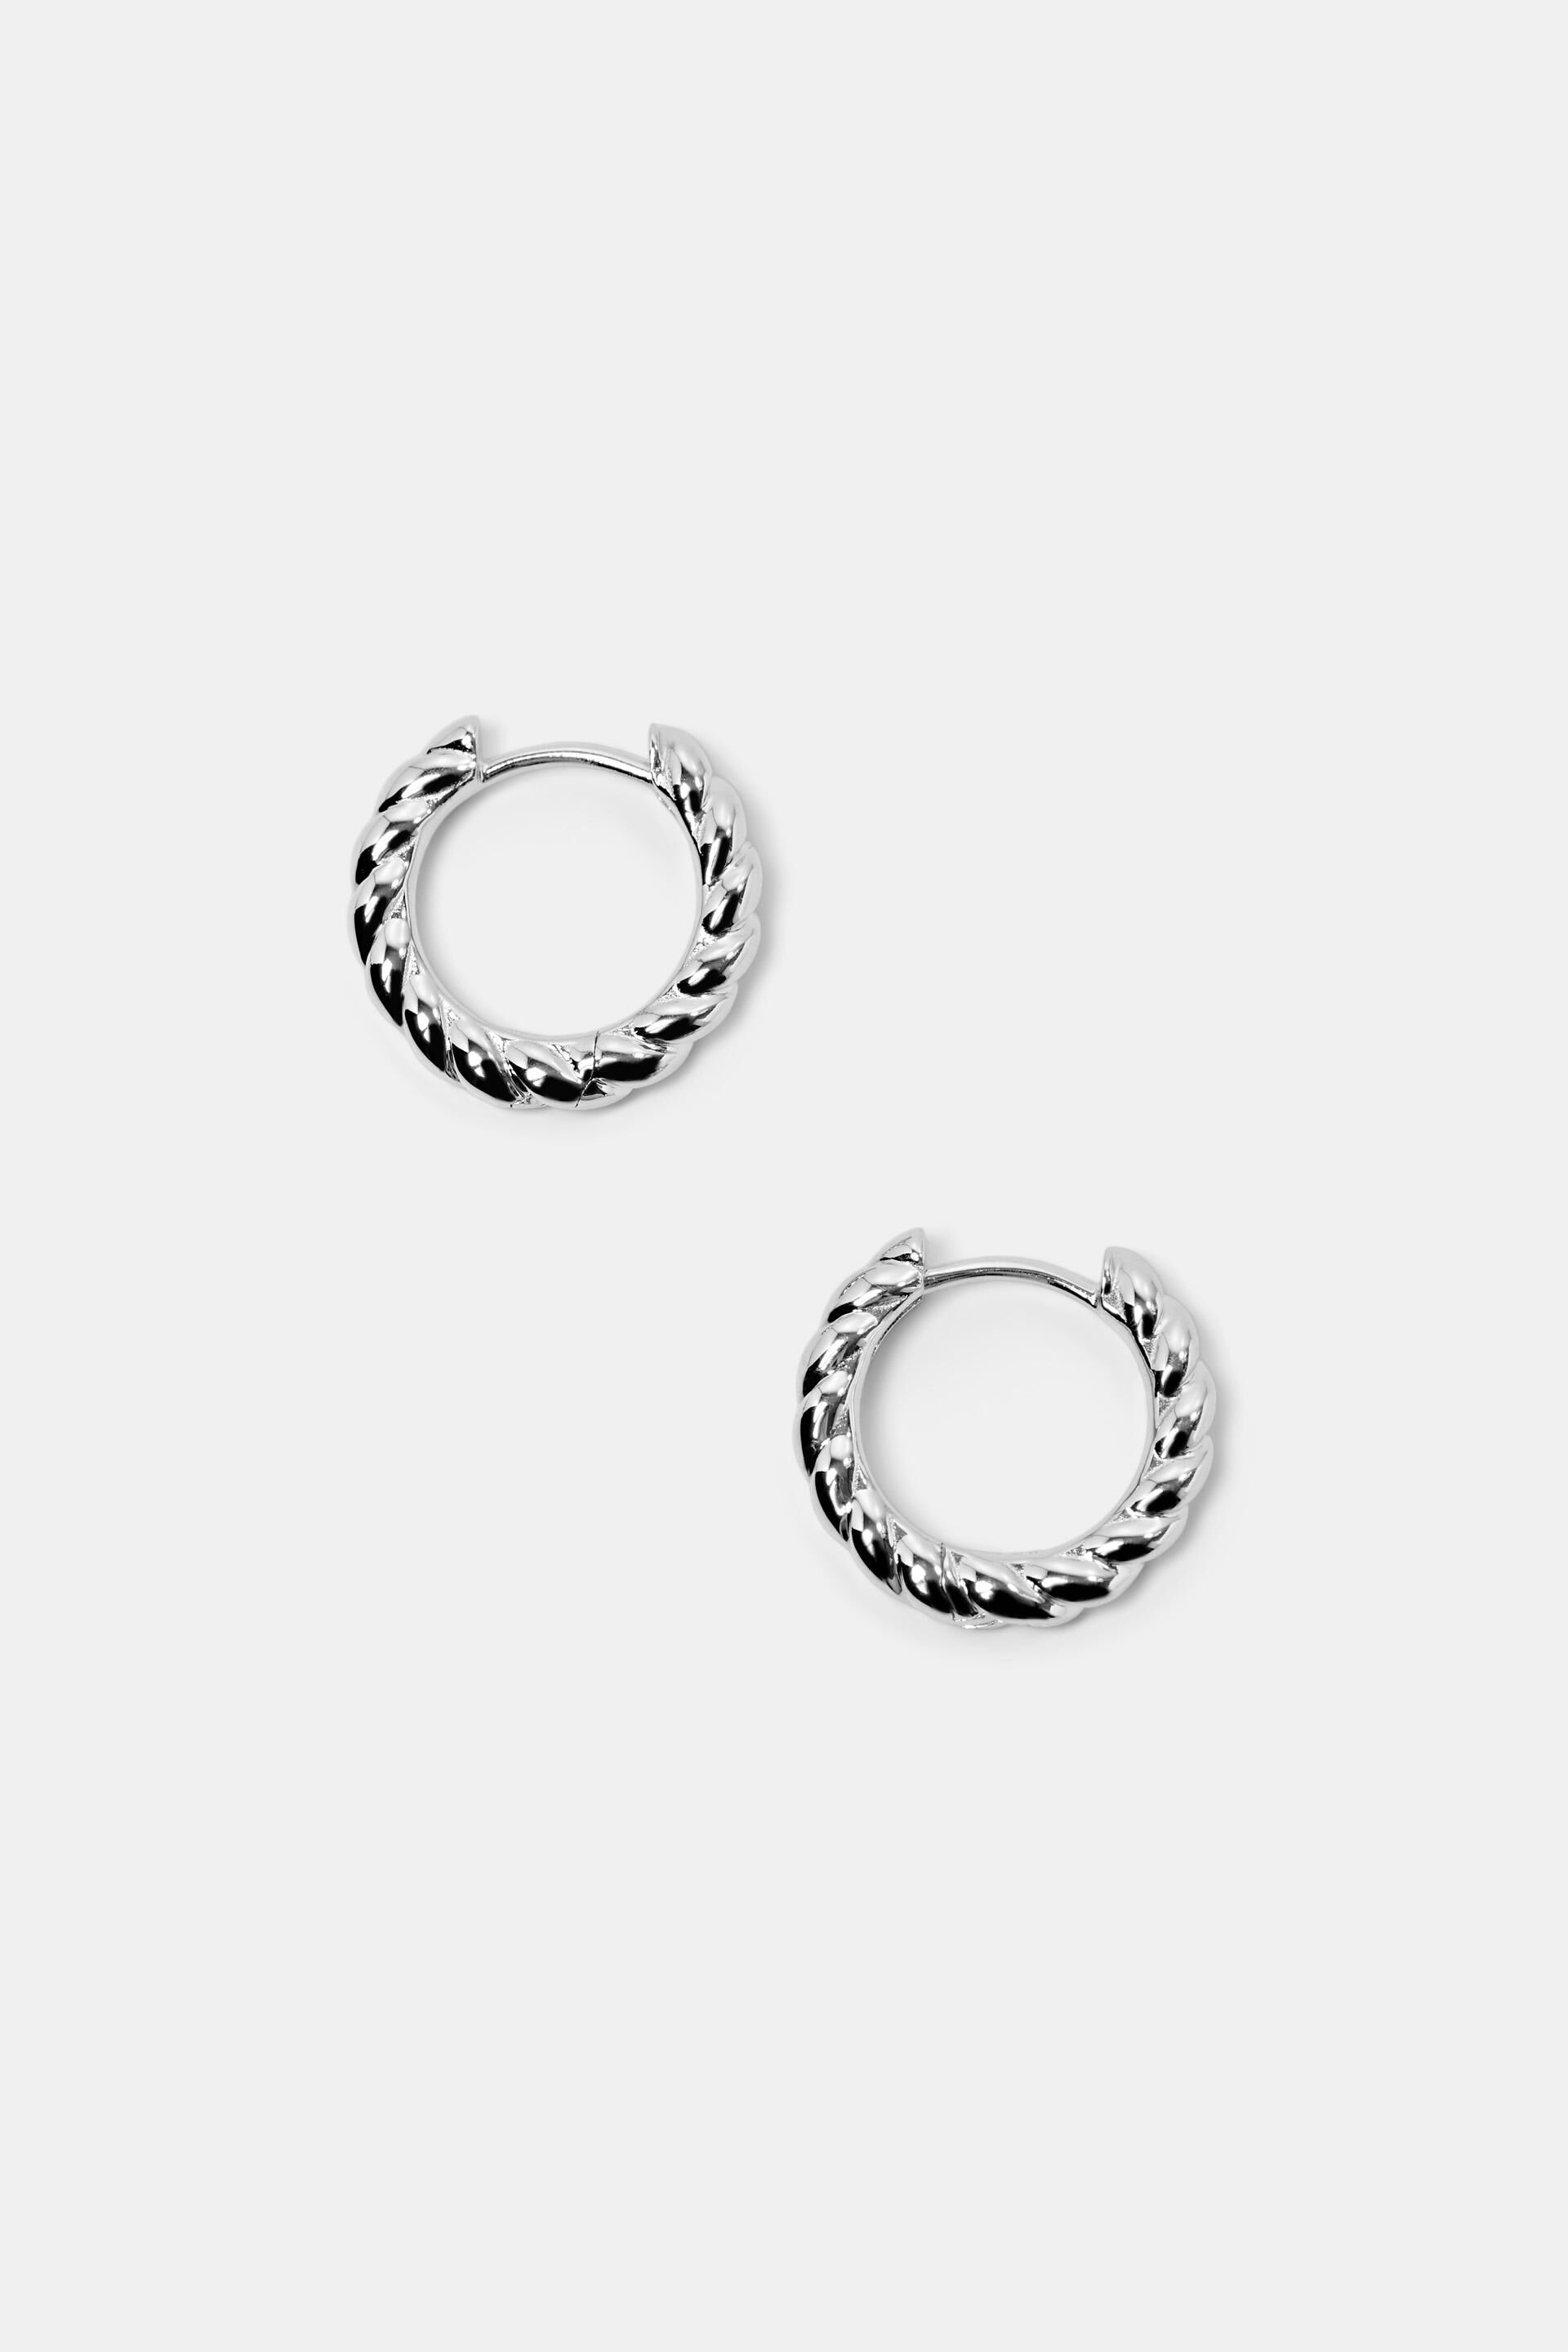 Esprit Earrings Hoop Twisted Silver Sterling